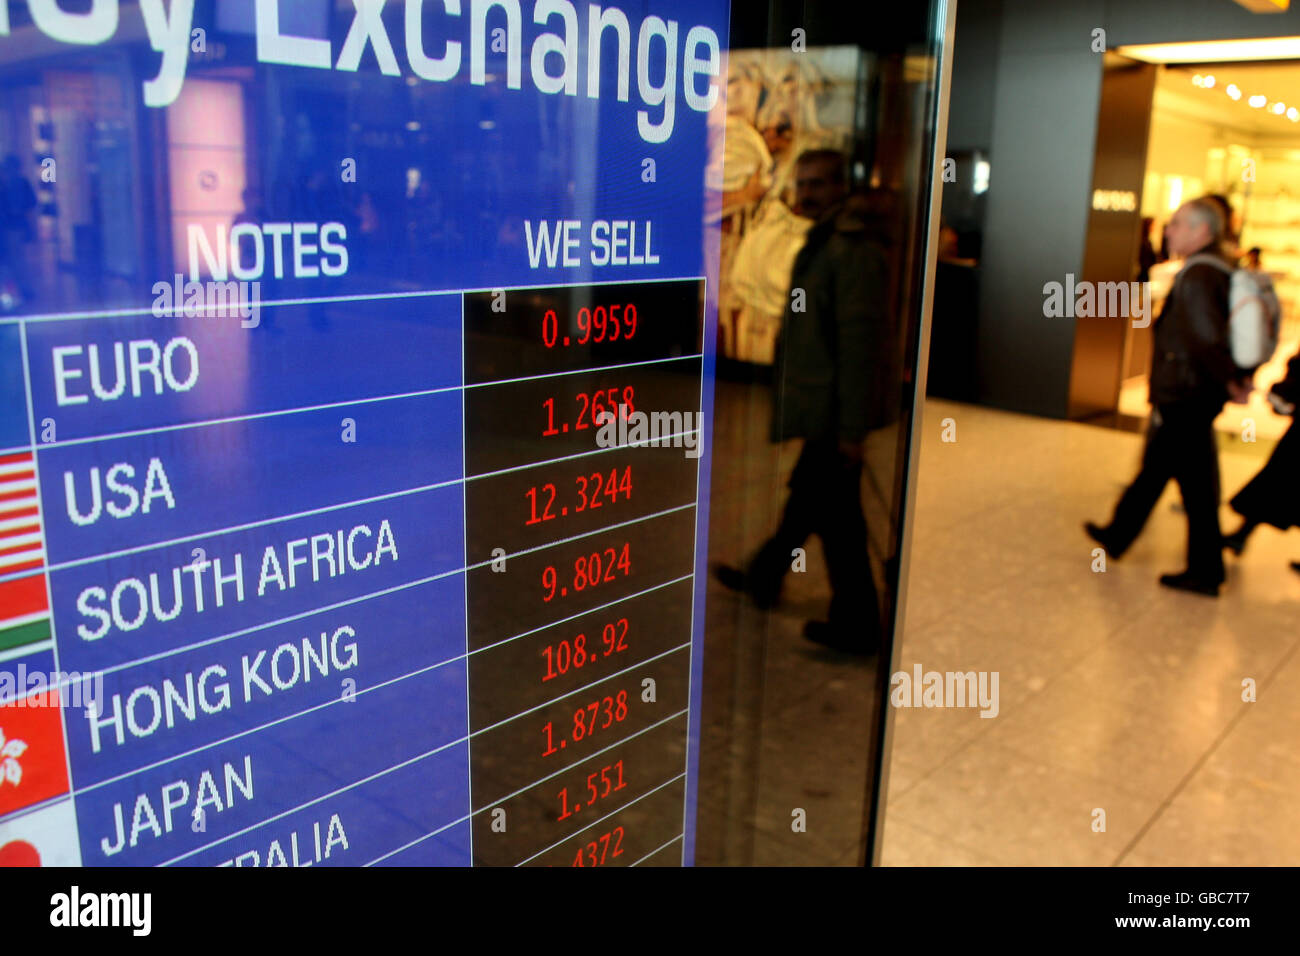 Balance general - Cambio de divisas Travelex - Terminal 5 - Aeropuerto de Heathrow Foto de stock